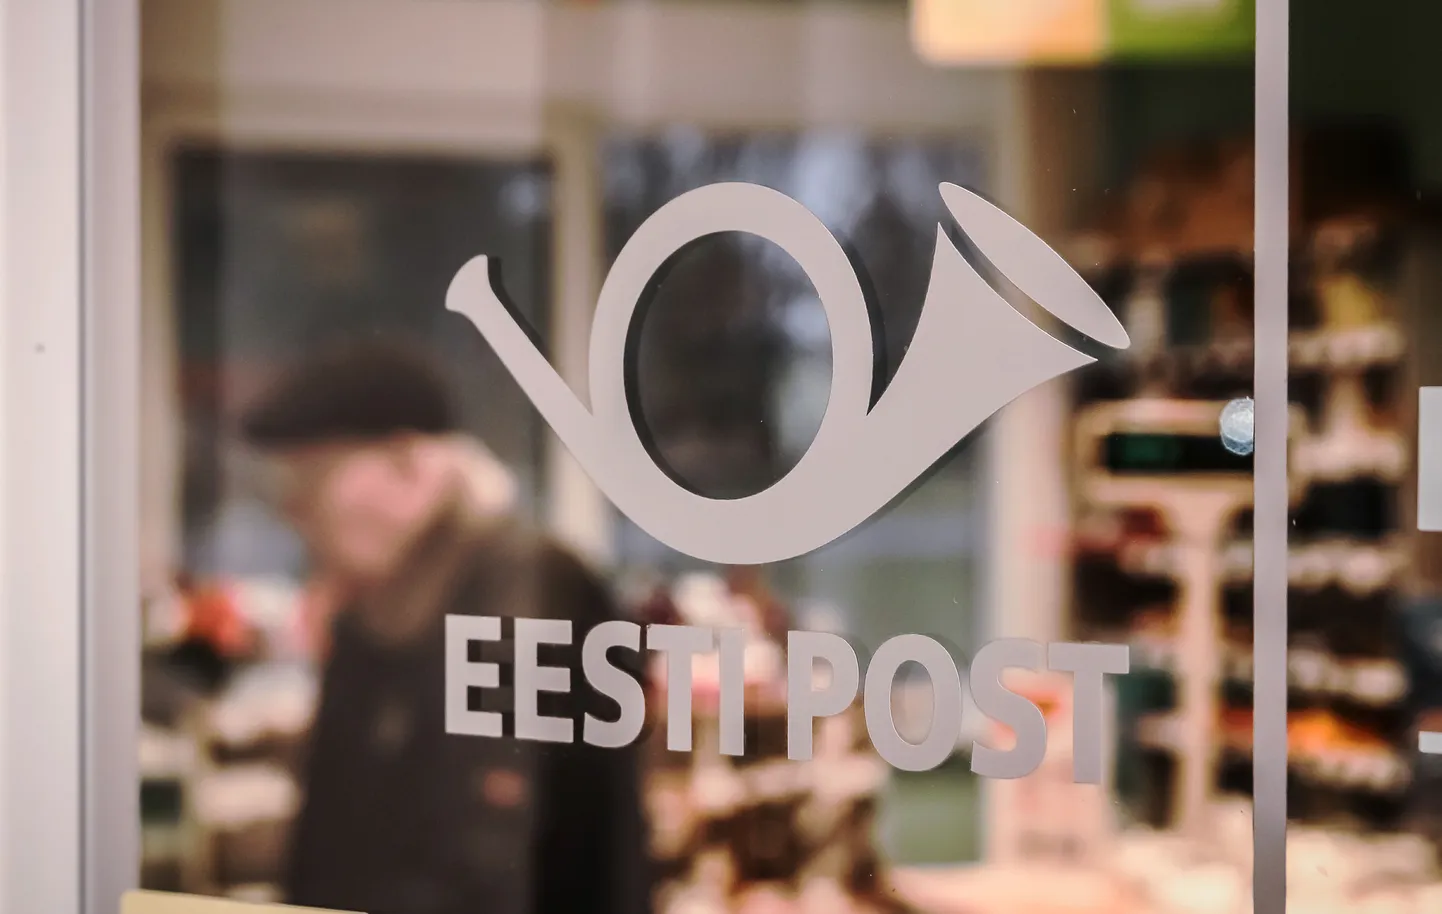 Eesti Post